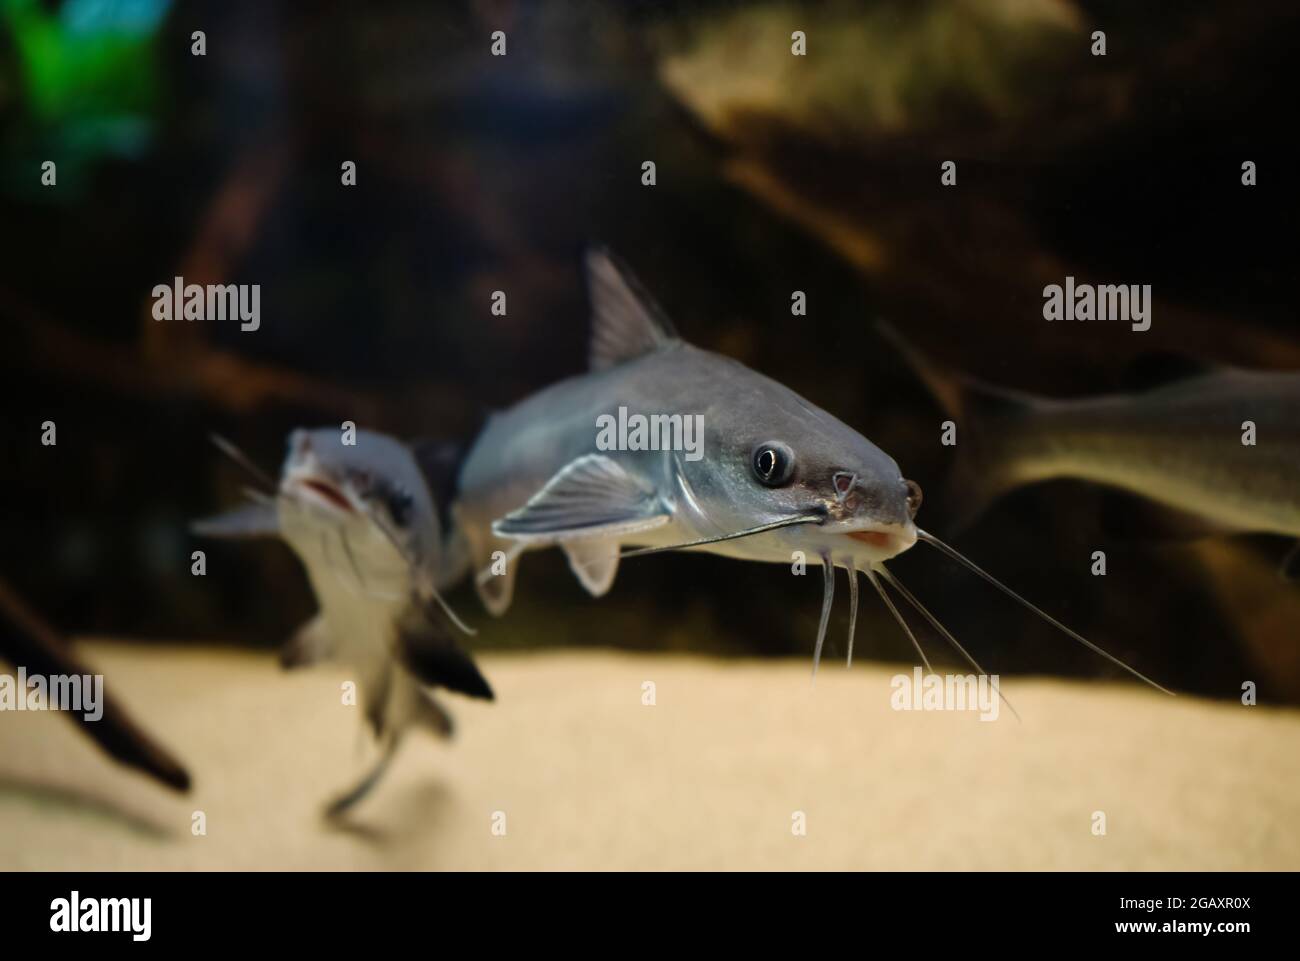 https://c8.alamy.com/comp/2GAXR0X/funny-image-of-smiling-guri-sea-catfish-or-genidens-genidens-2GAXR0X.jpg